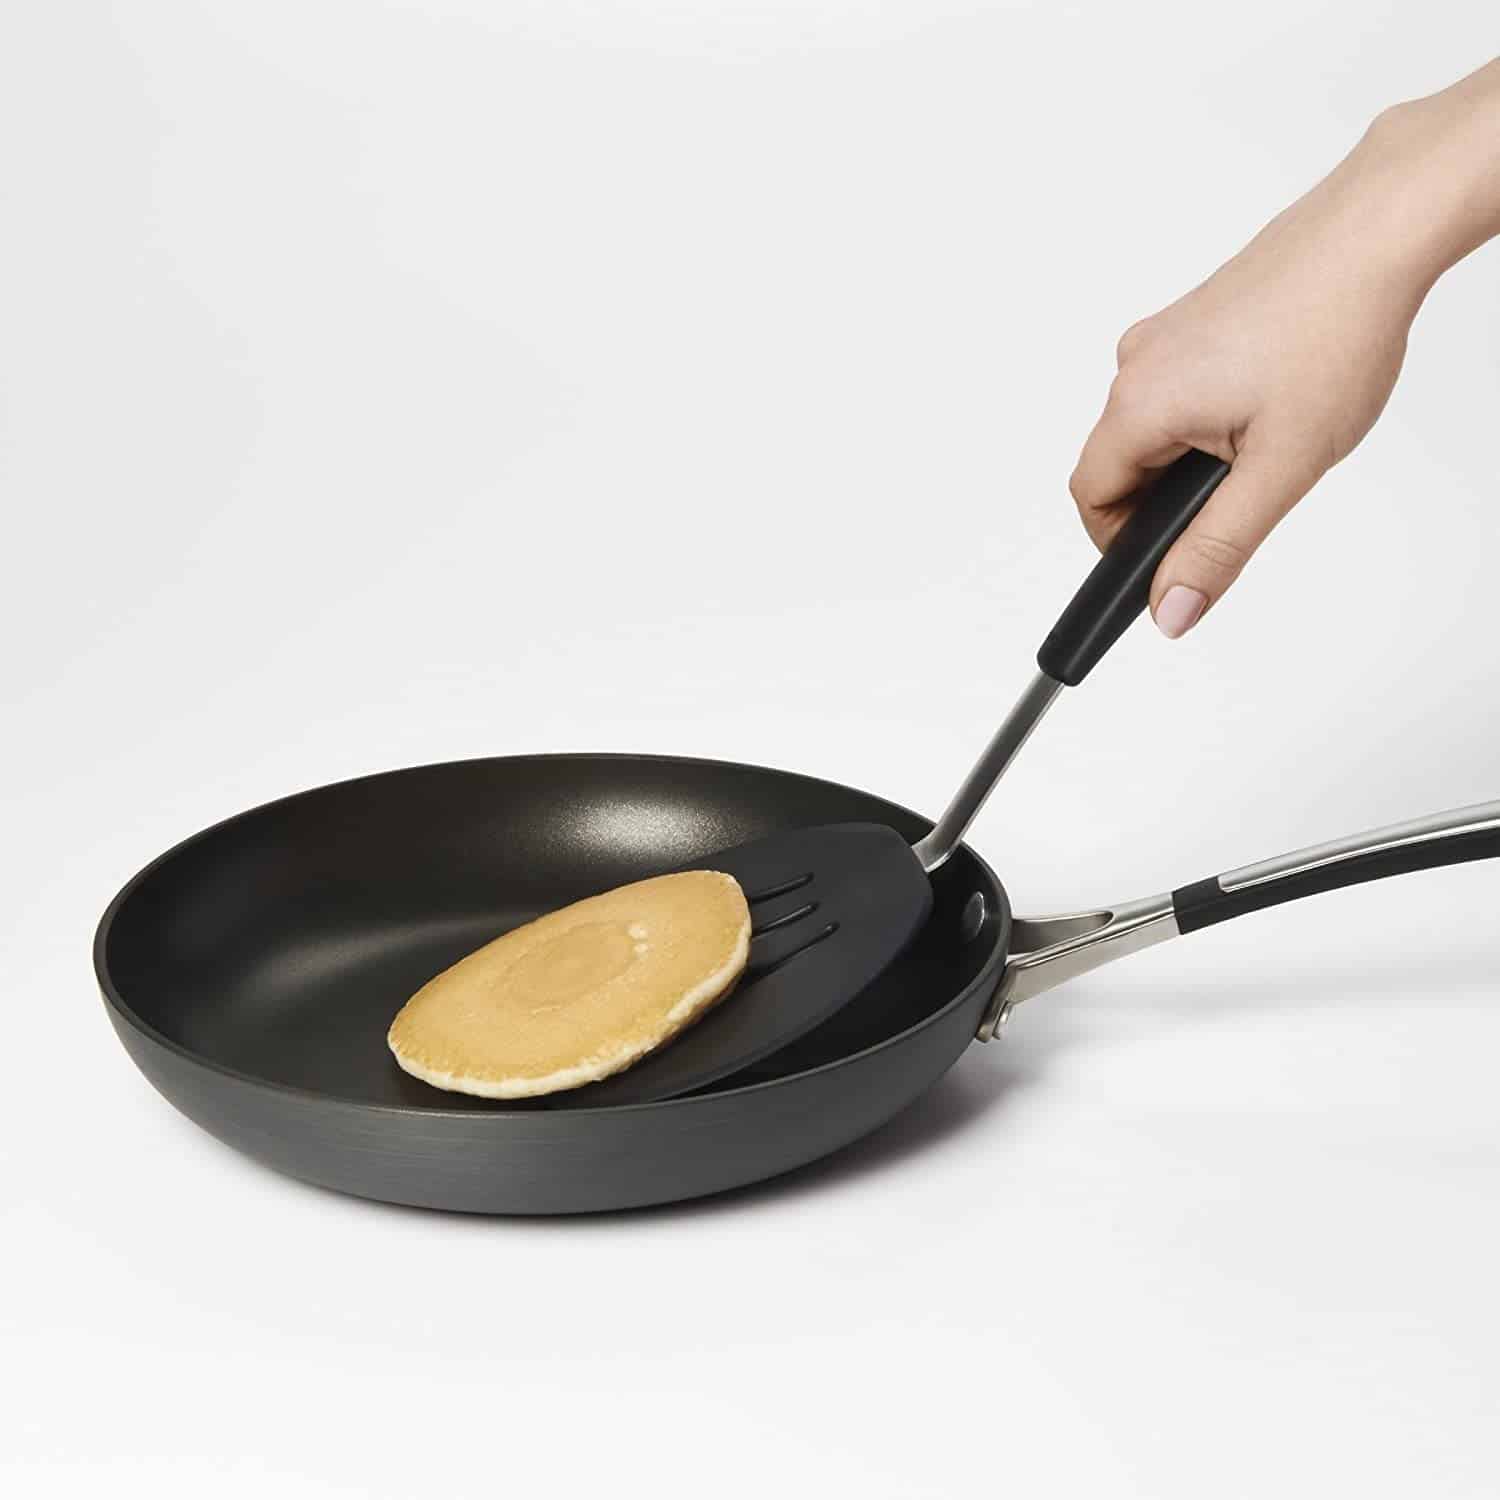 Bästa spateln för pannkakor överlag- OXO Good Grips Pancake Turner vänder en pannkaka